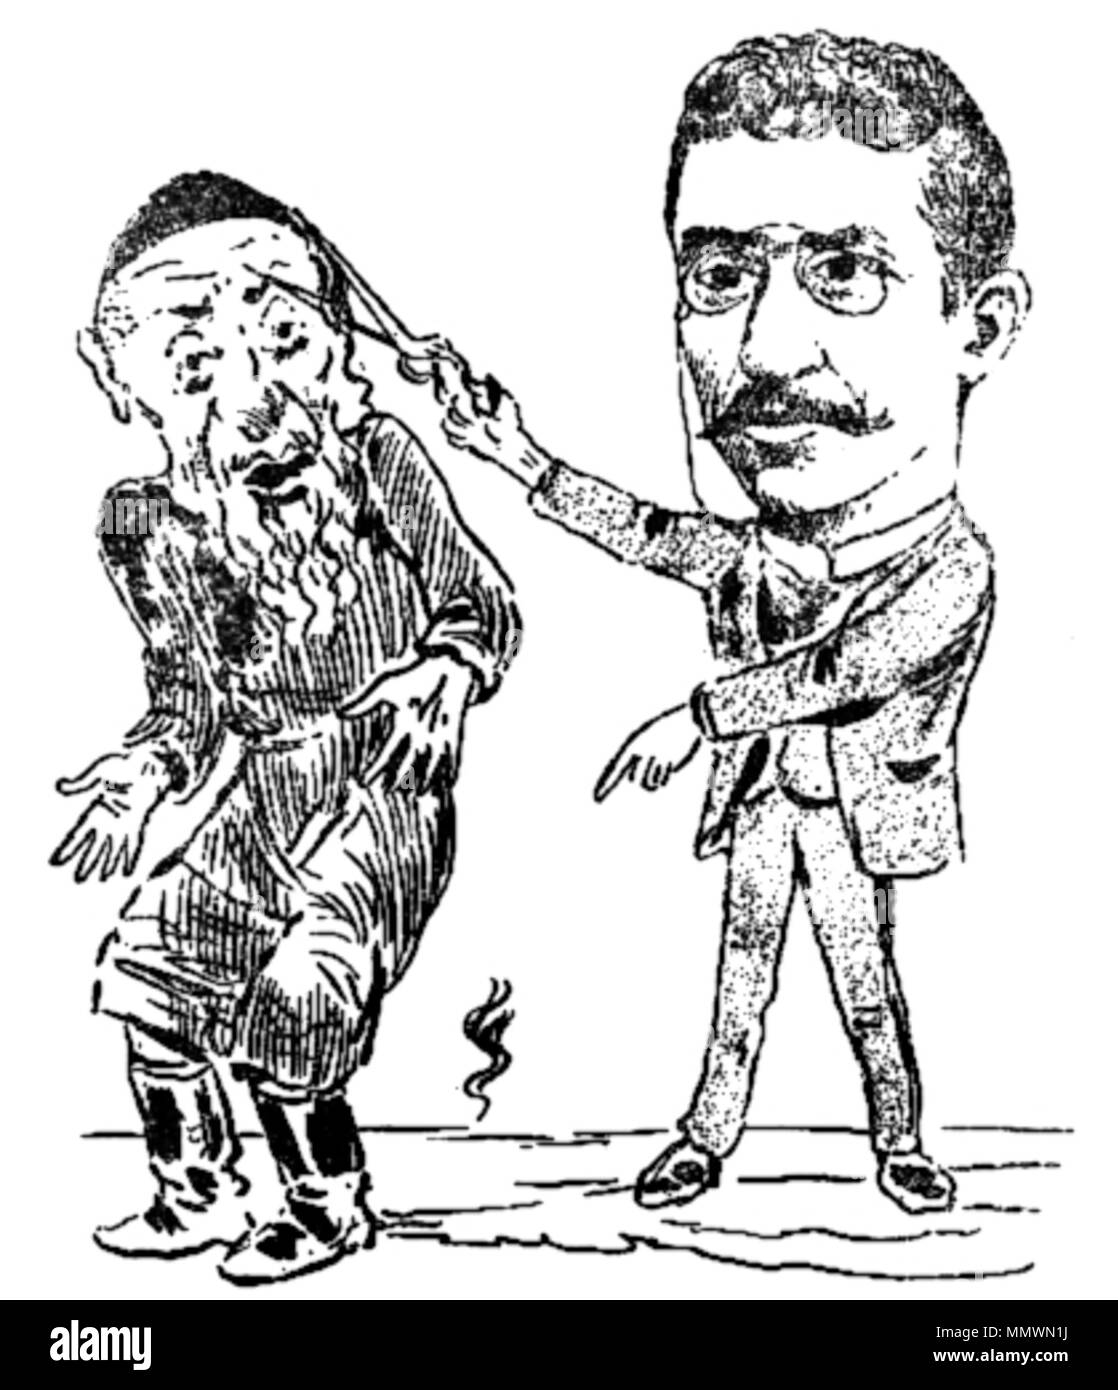 Constantin Jiquidi - Sache Petreanu, Foaia Populară, 14 feb 1899 Foto Stock